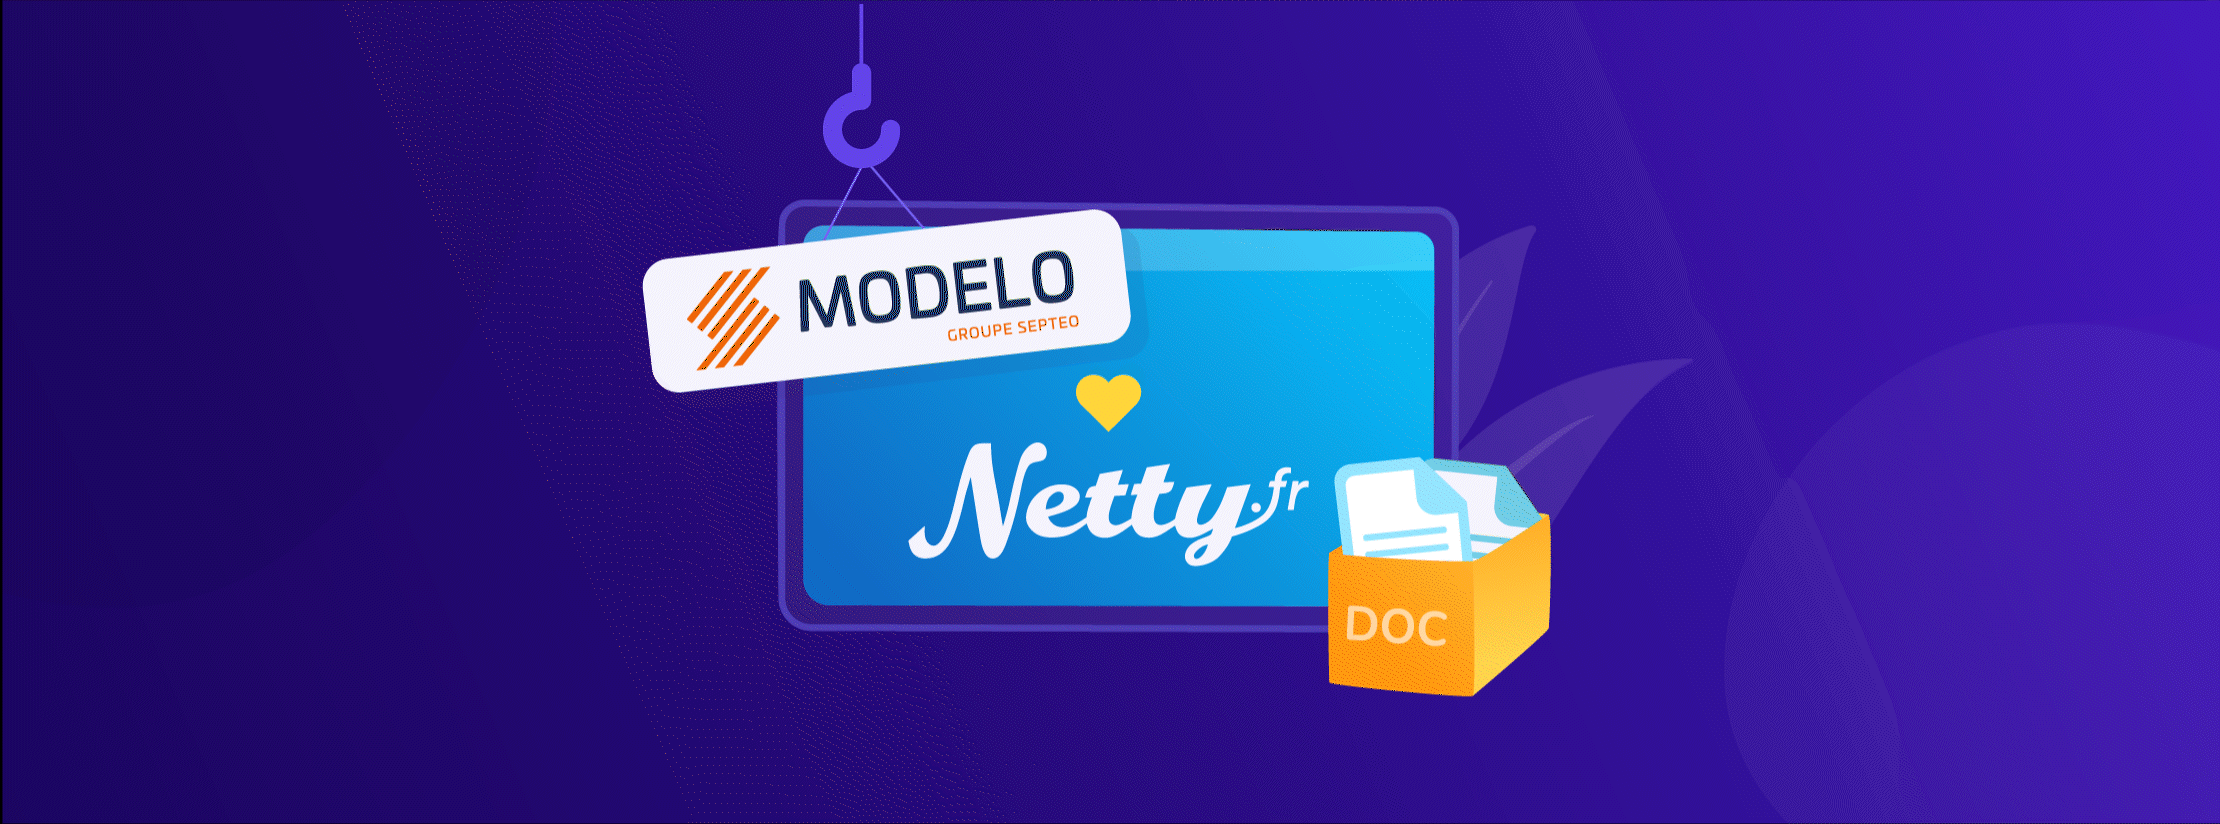 Netty Boost : L’intégration la plus complète de Modelo